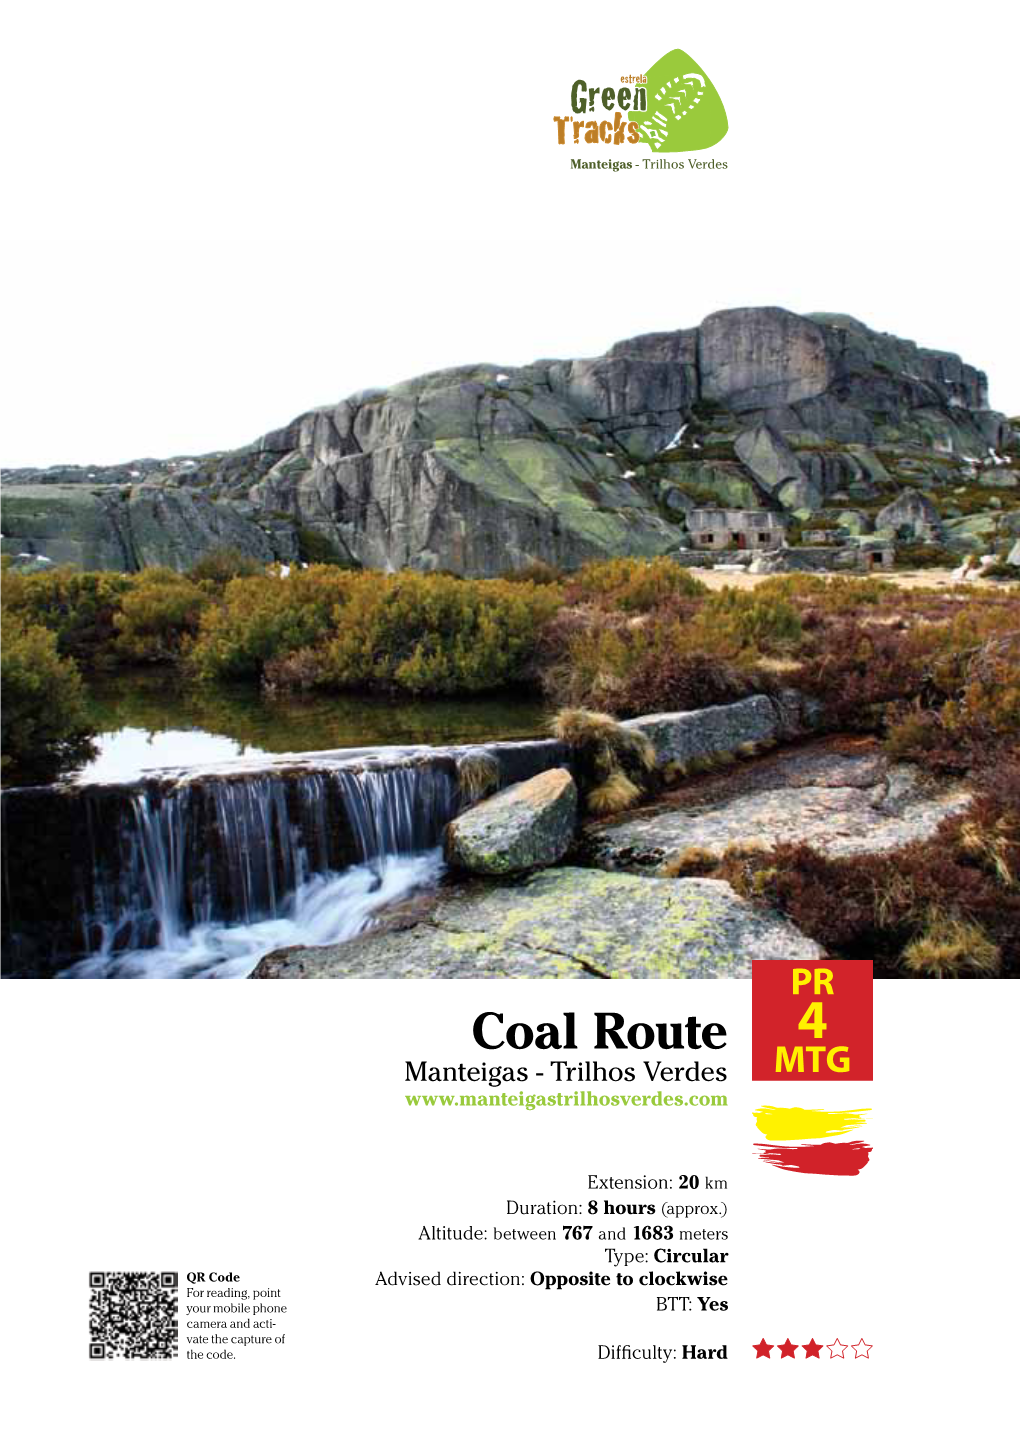 Coal Route Manteigas - Trilhos Verdes